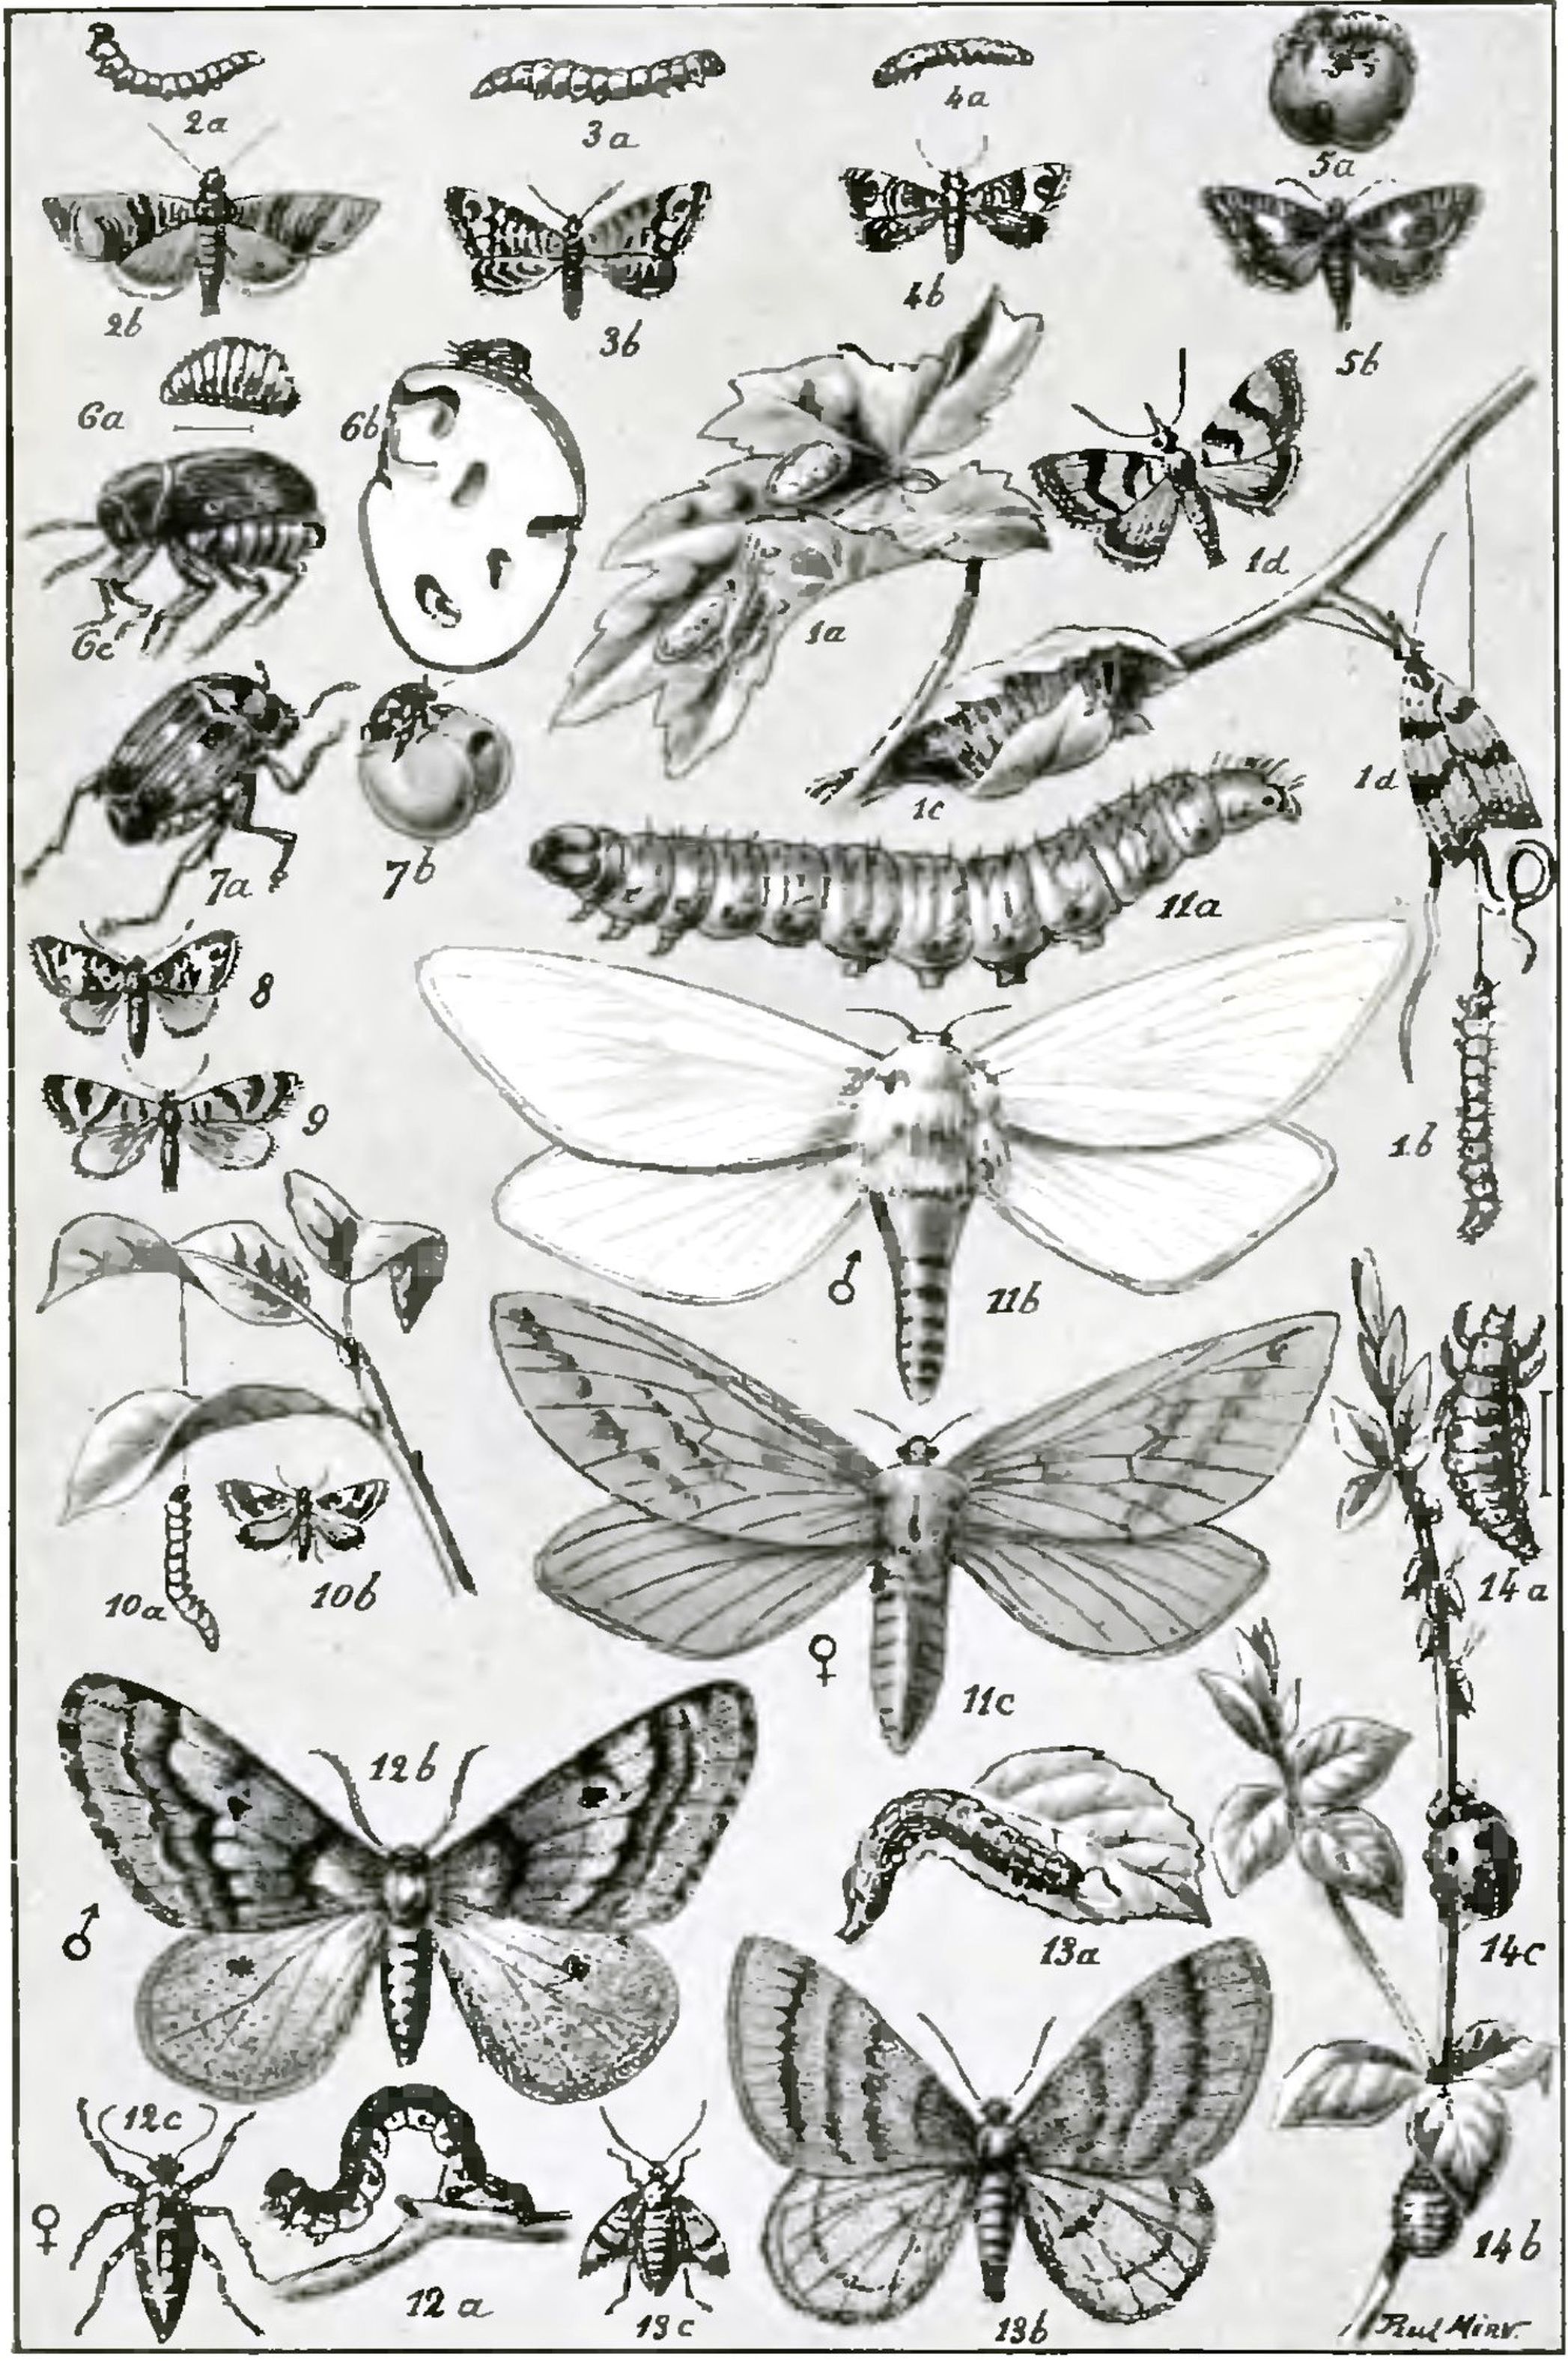 Août 2021 - Les Ravageurs. Récits sur les insectes nuisibles à l'agriculture / J.-H. Fabre, 1918. BM Reims, P 19002